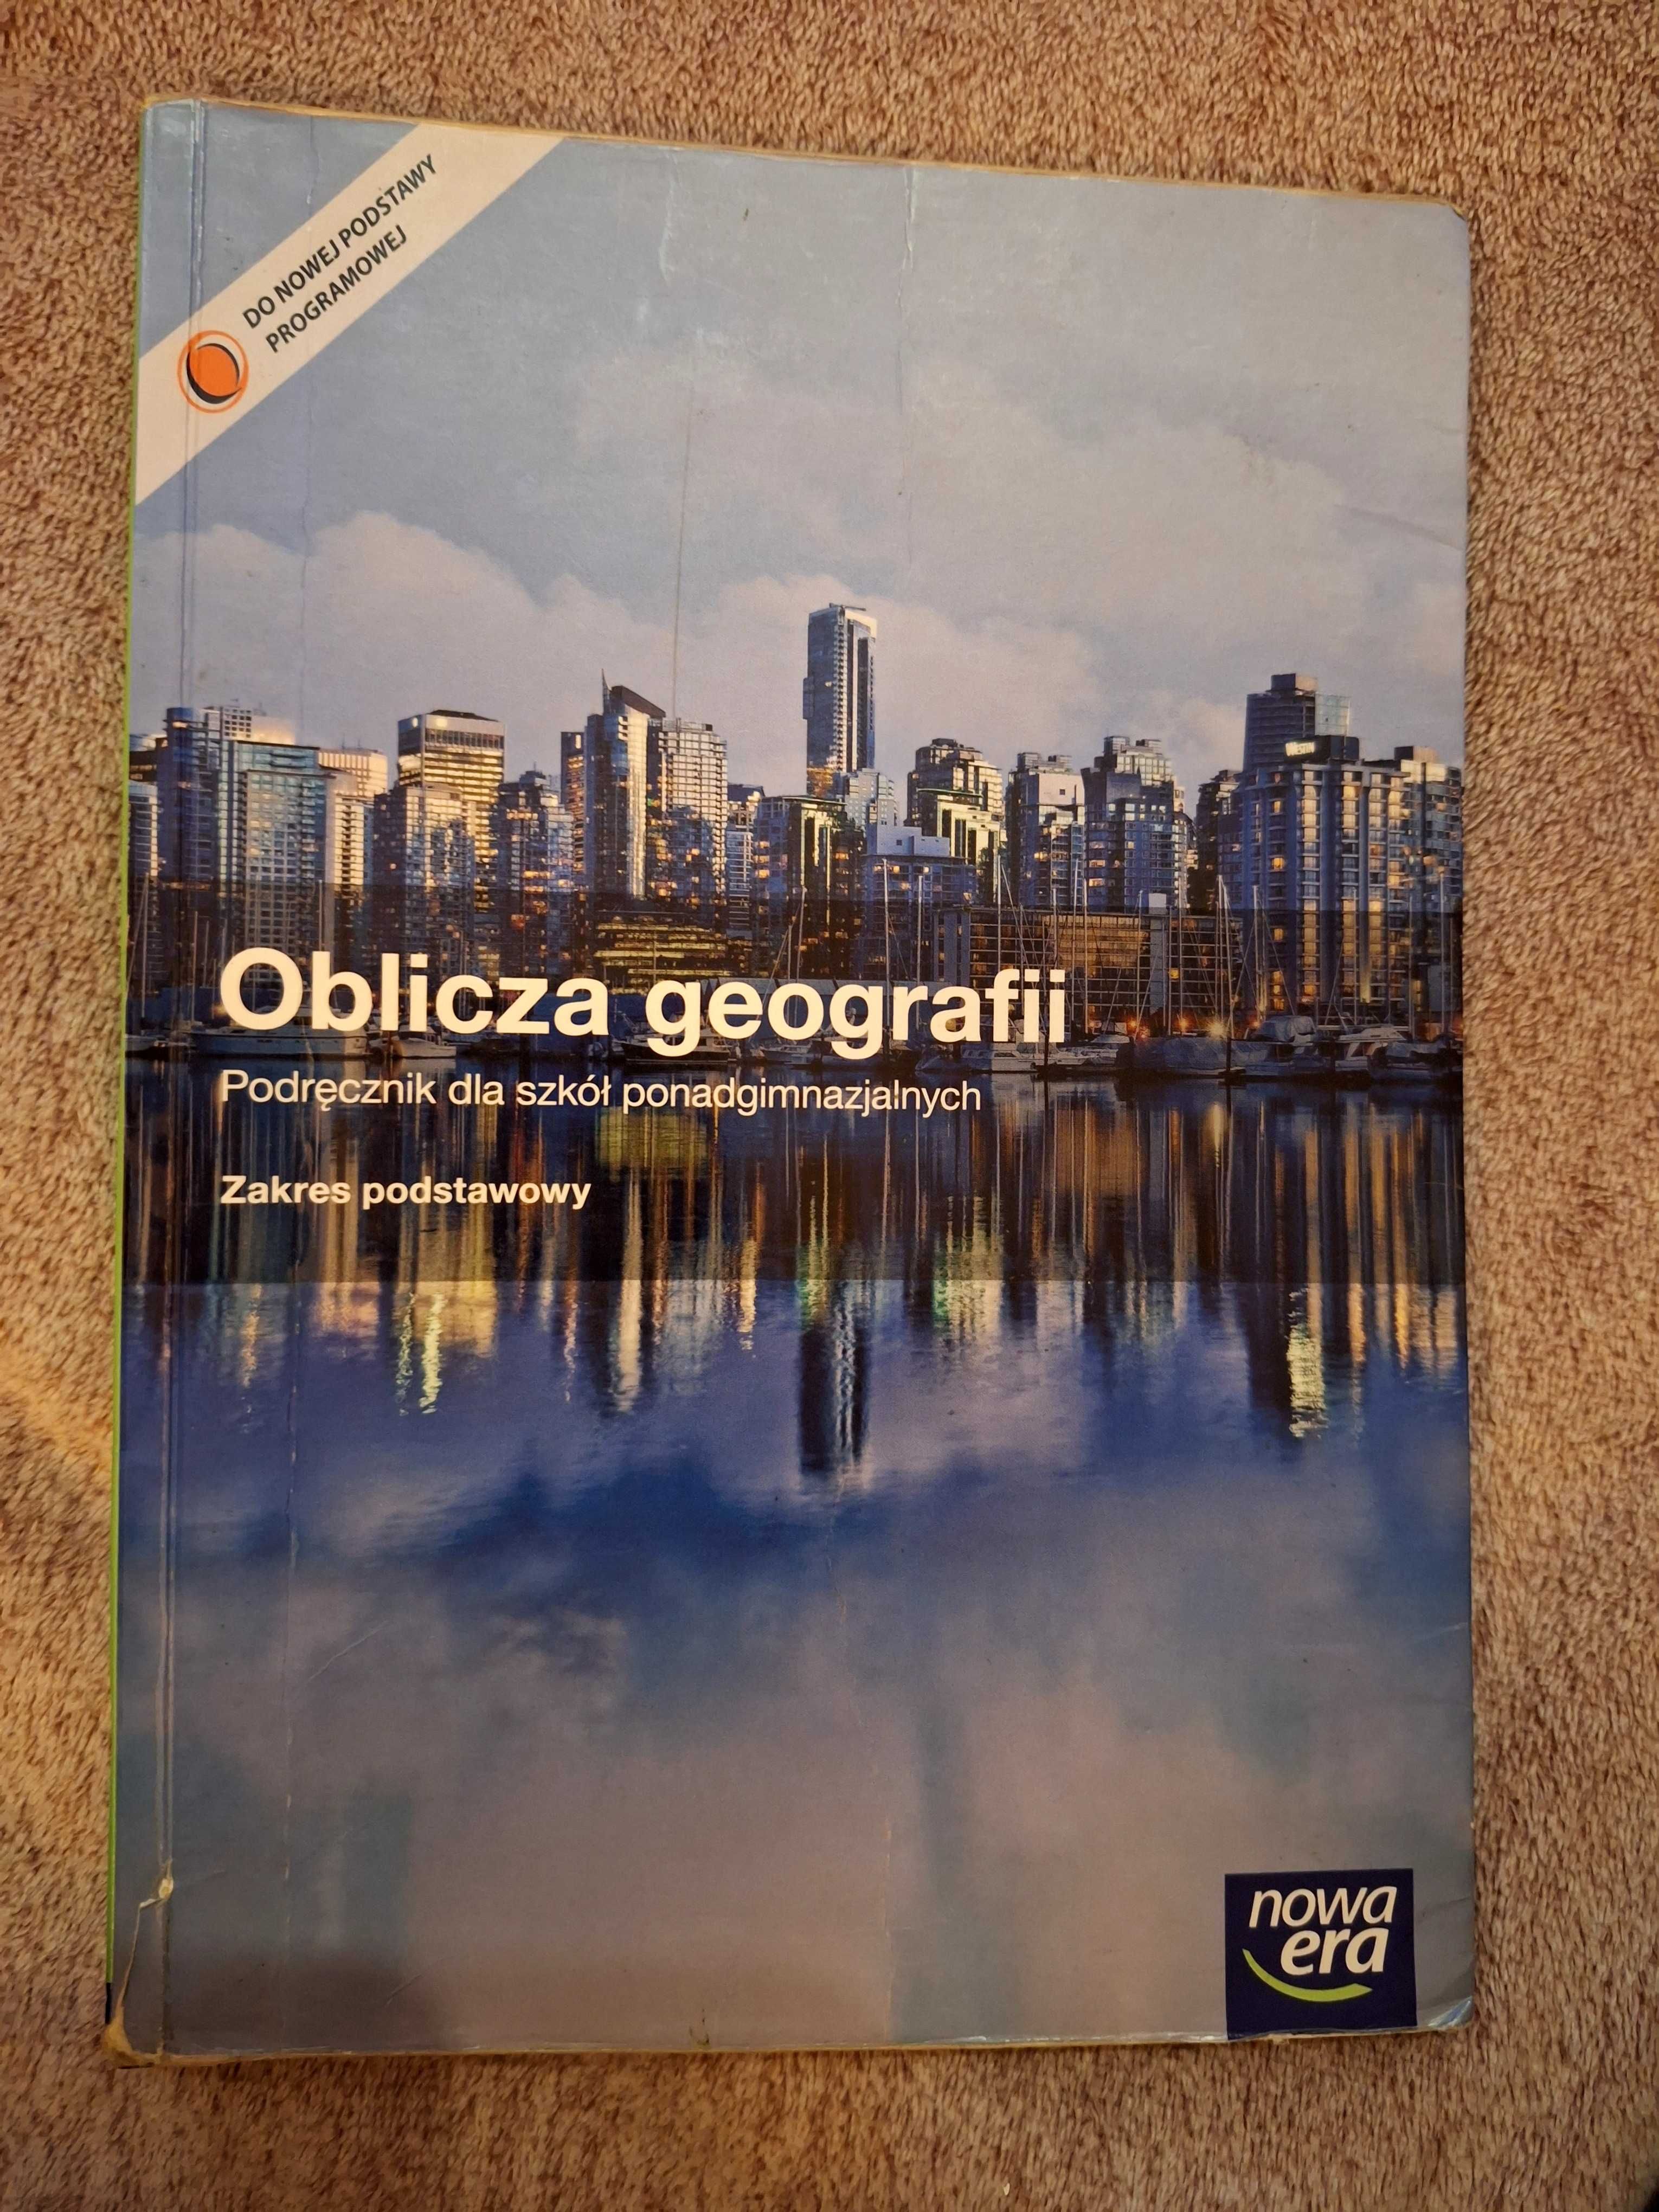 Podręcznik Oblicza geografii. Zakres podstawowy.